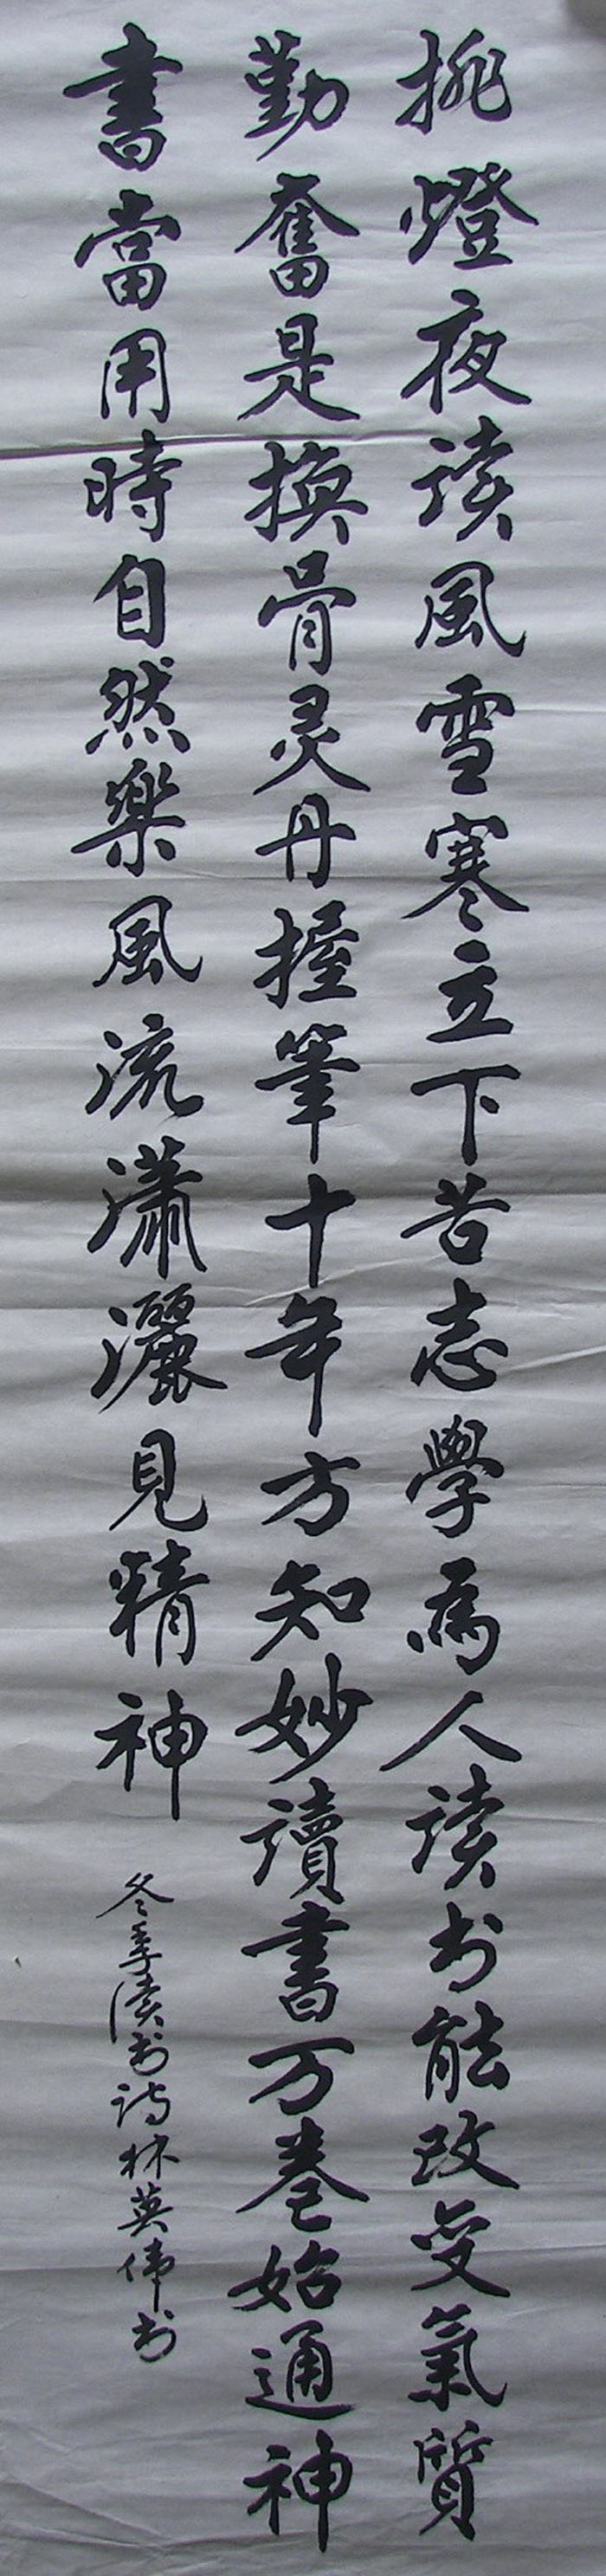 LamYiWei Calligraphy